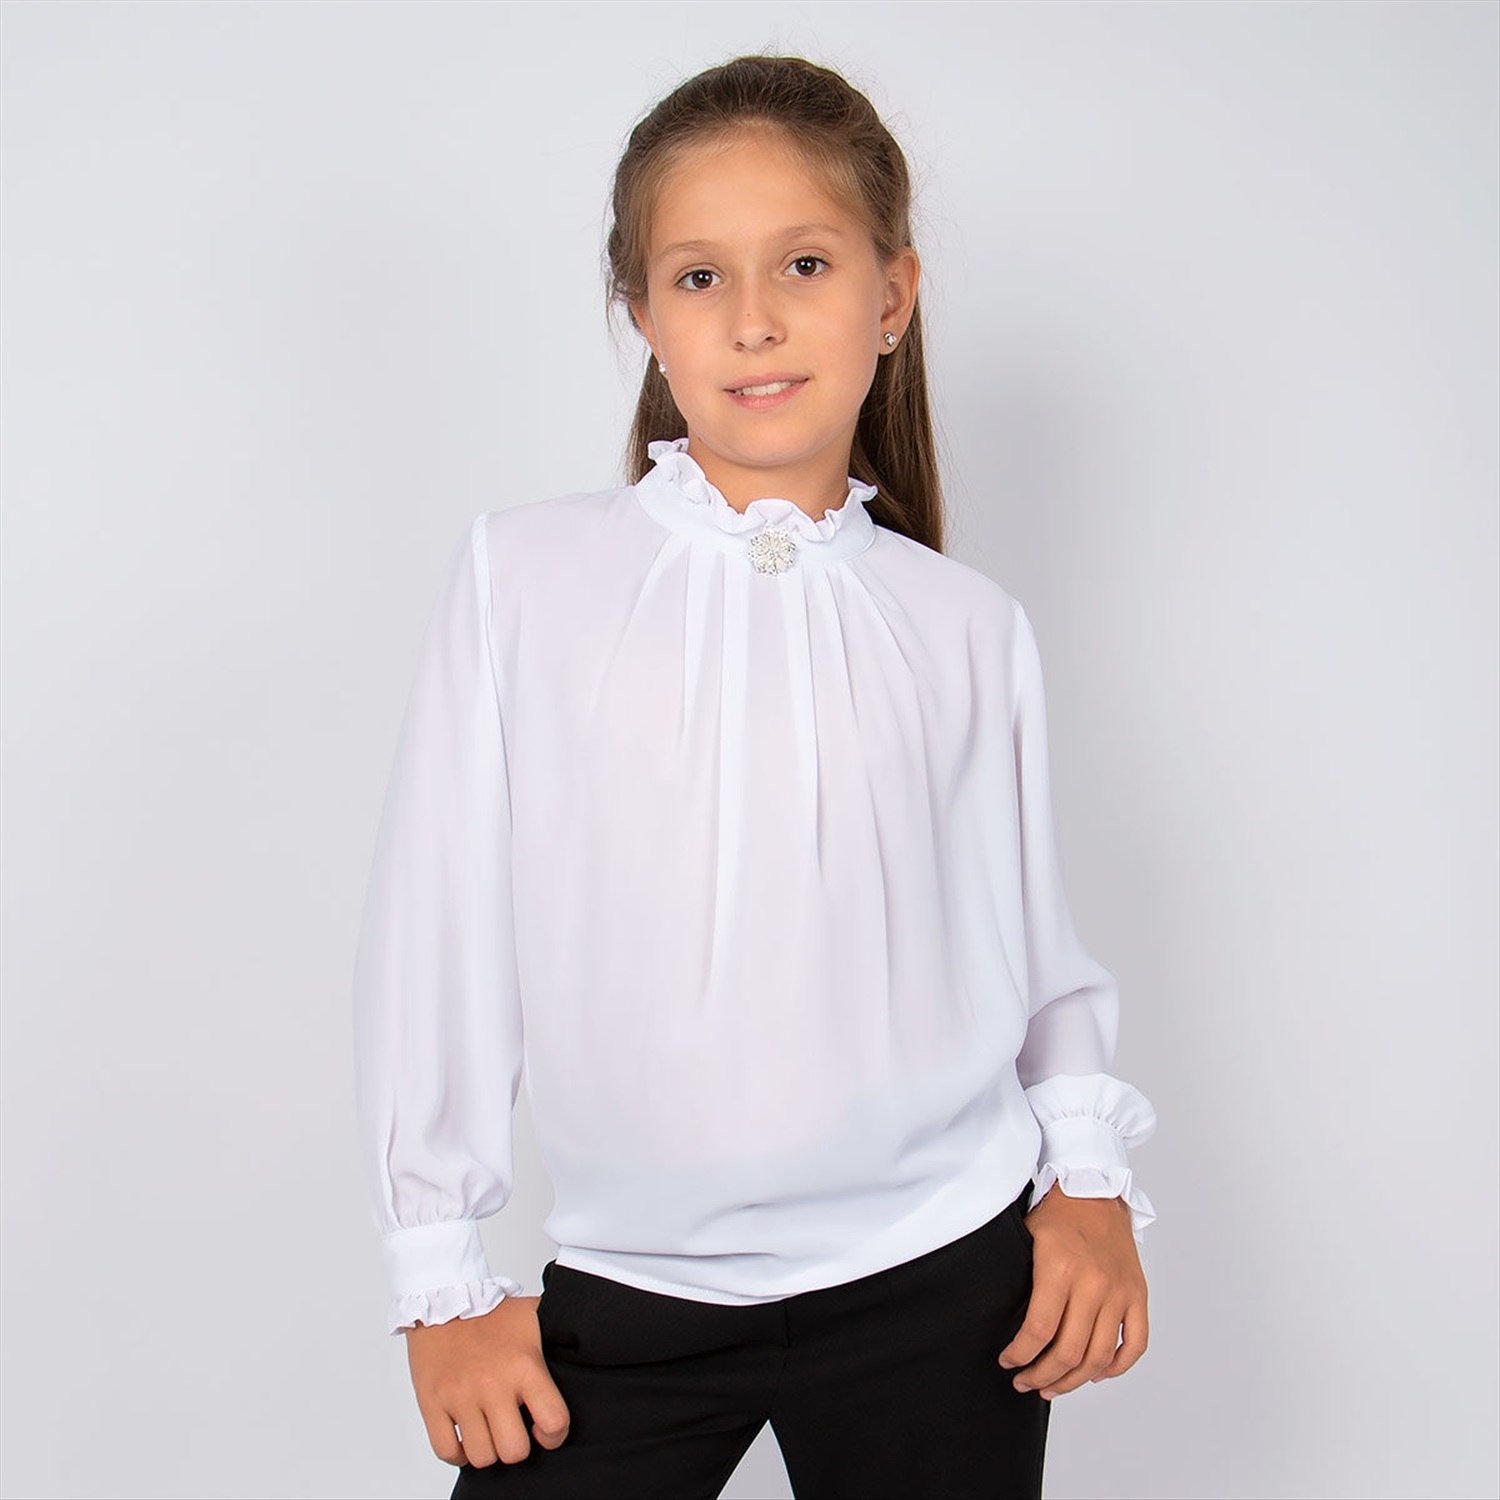 Школьная блузка купить. Блузка Futurino School белая. Белая блузка для девочки. Блузка Школьная для девочек. Блузка белая Школьная для девочки.